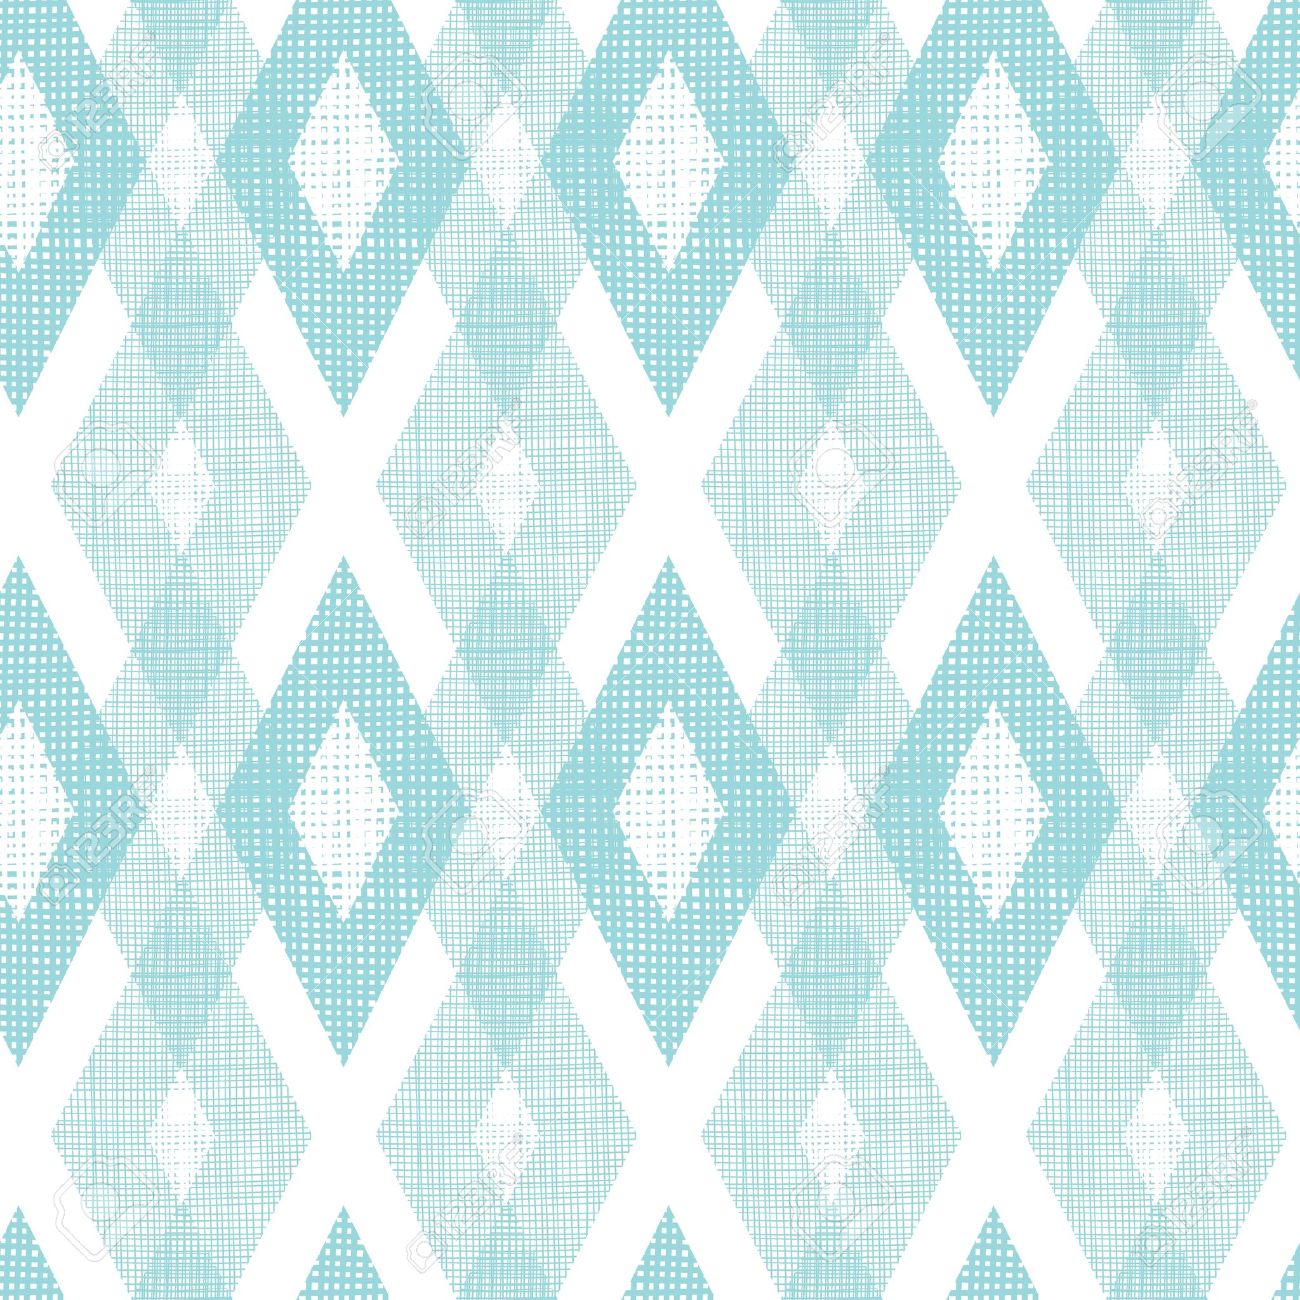 Pastel Blue Fabric Ikat Diamond Seamless Pattern Background Stock